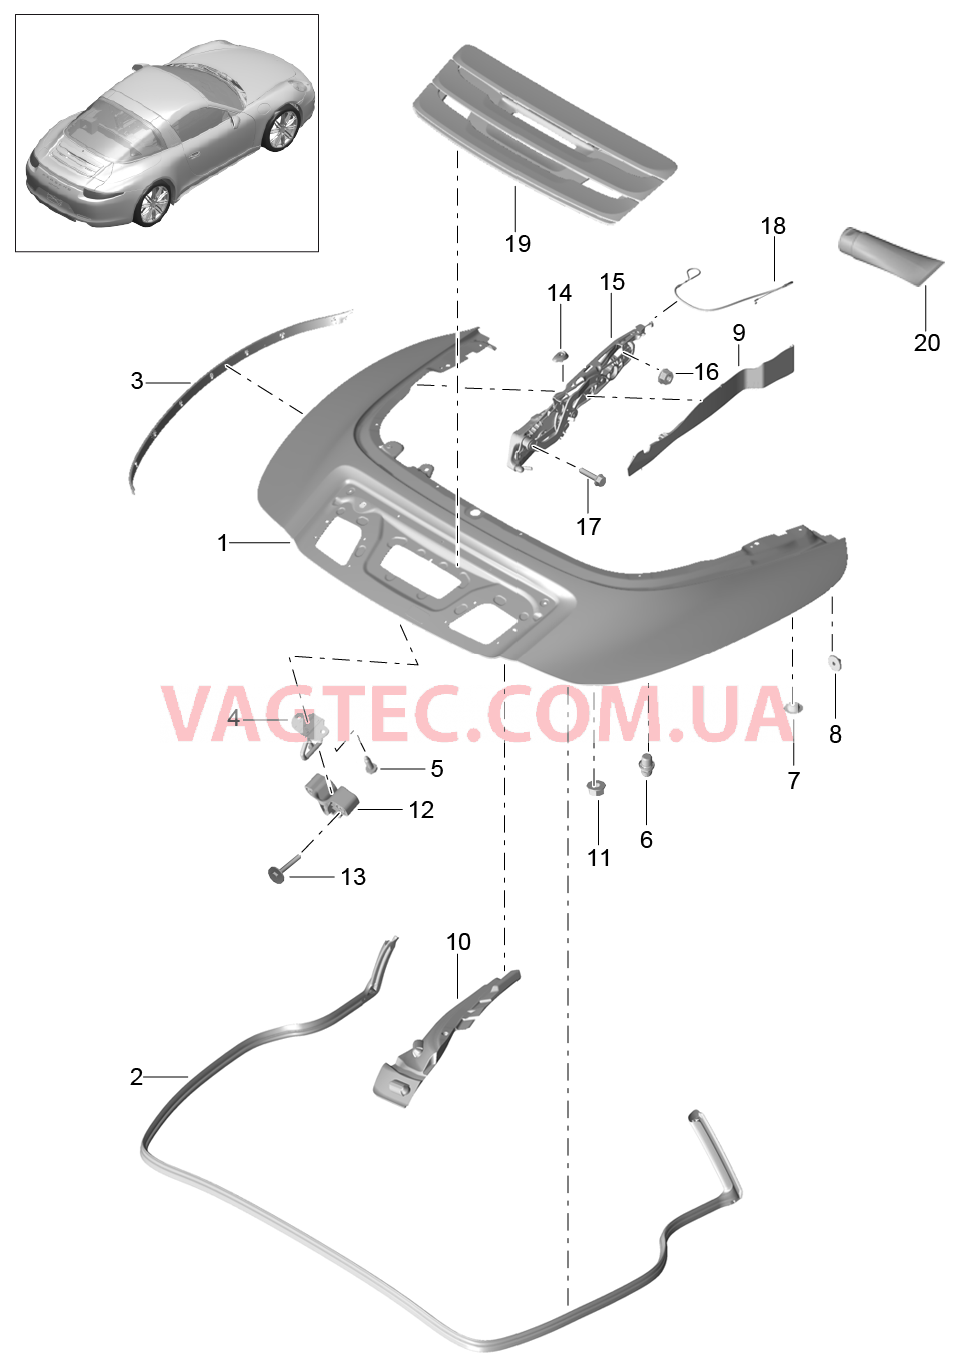 811-062 Отсек складного верха, Крышка
						
						TARGA для PORSCHE 911.Carrera 2012-2016